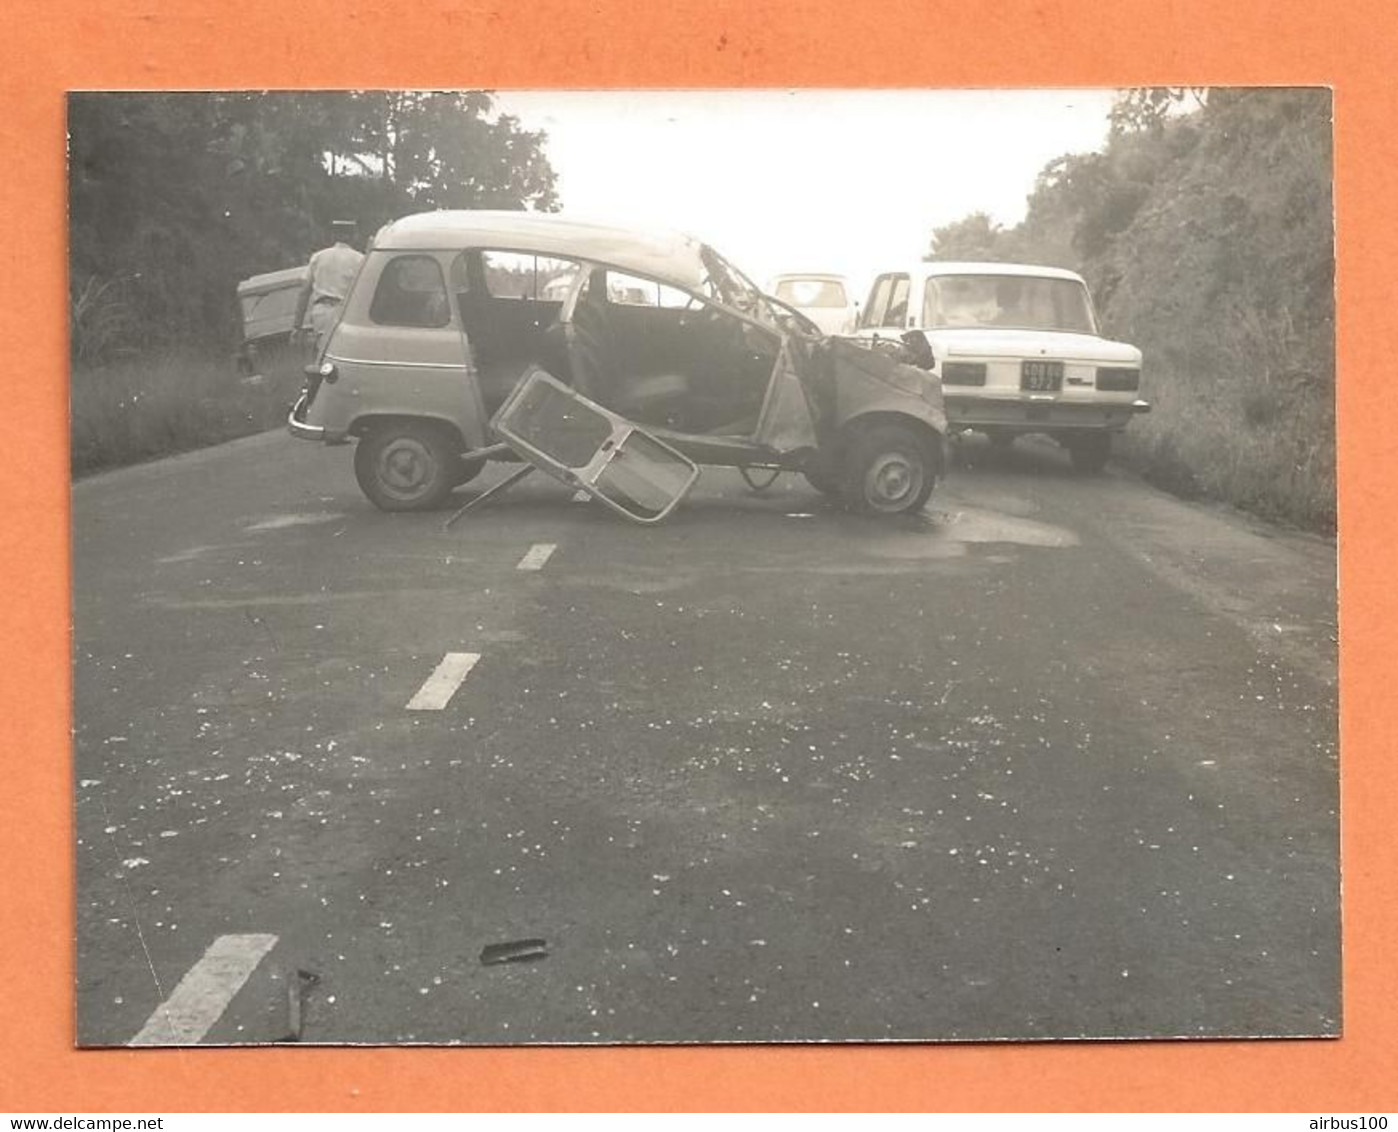 PHOTO ORIGINALE 1973 LE LAMANTIN MARTINIQUE - ACCIDENT DE VOITURE RENAULT 4L + FIAT OU LADA - R4 R 4 - CRASH CAR - Cars